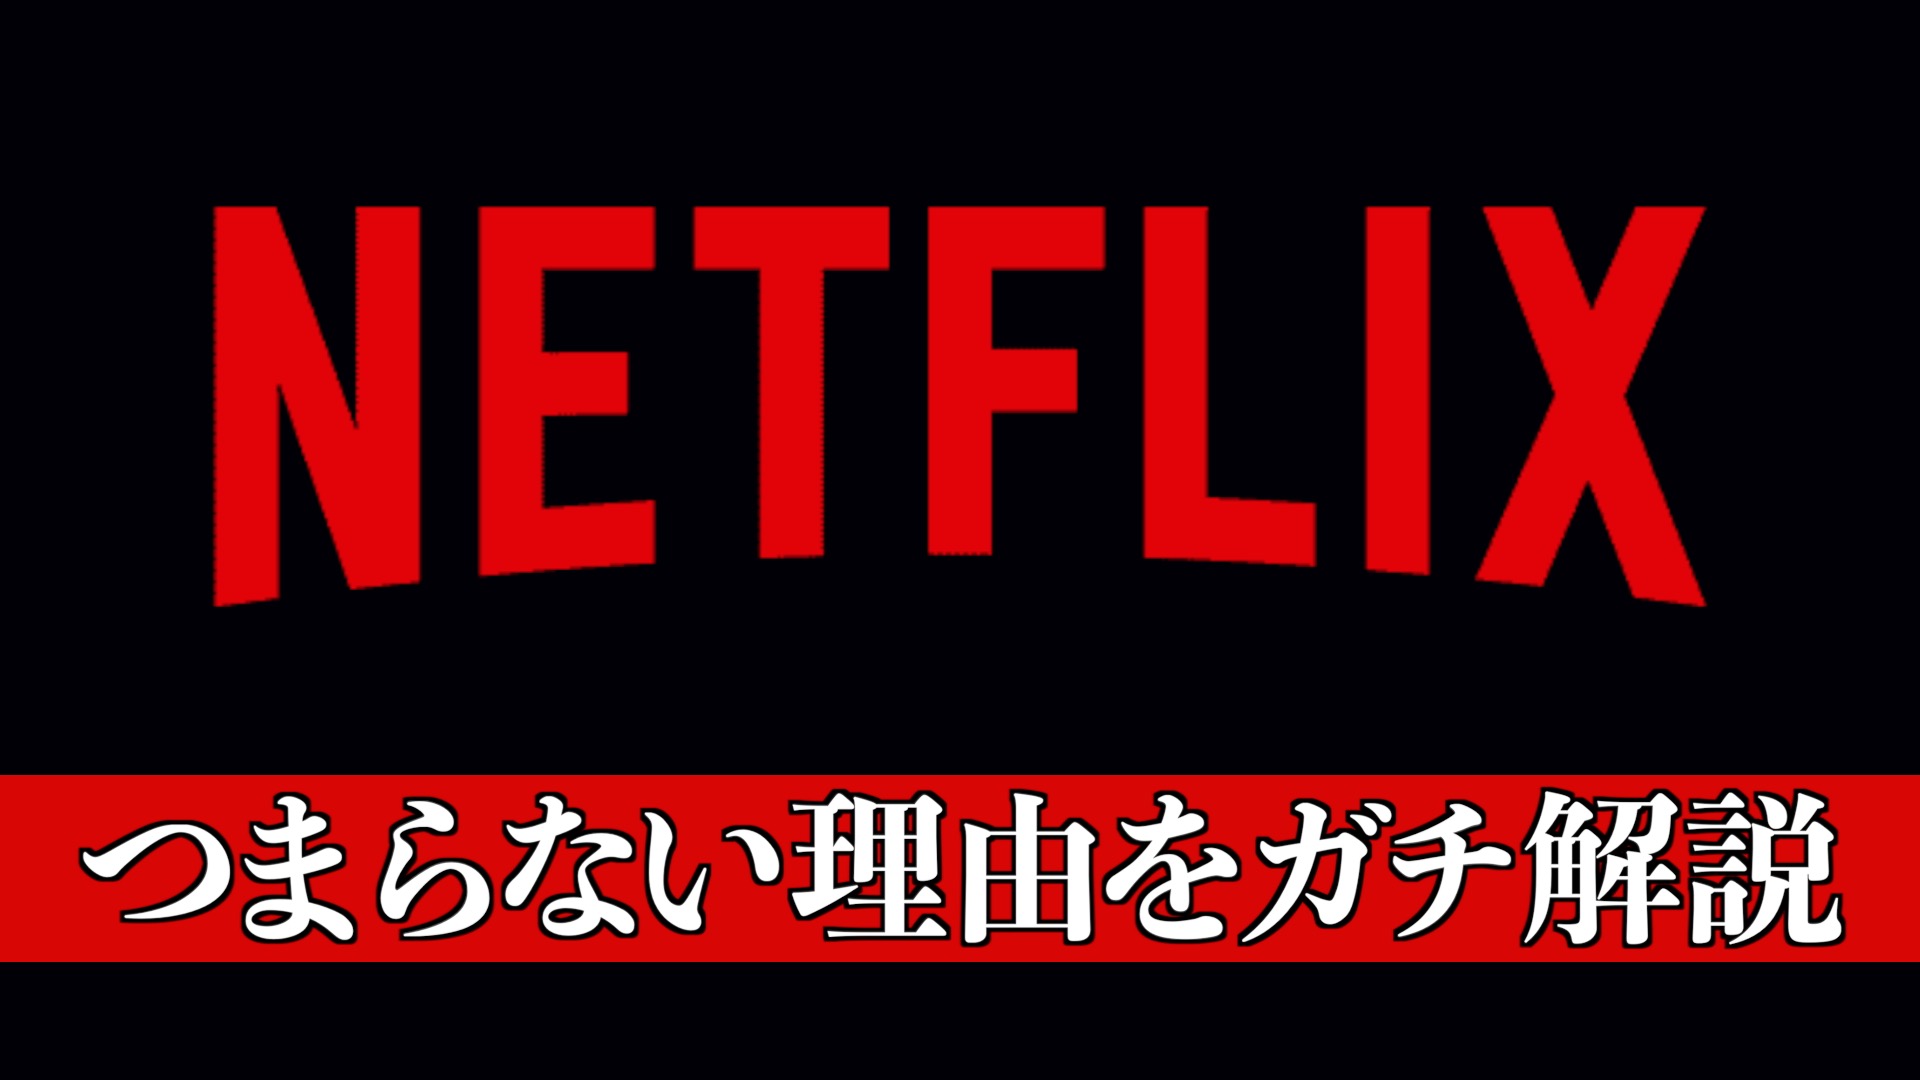 【日本のアニメ製作を減らす】Netflixアニメがつまらない理由と制作会社で広がる不信感を解説・考察【ネットフリックス】